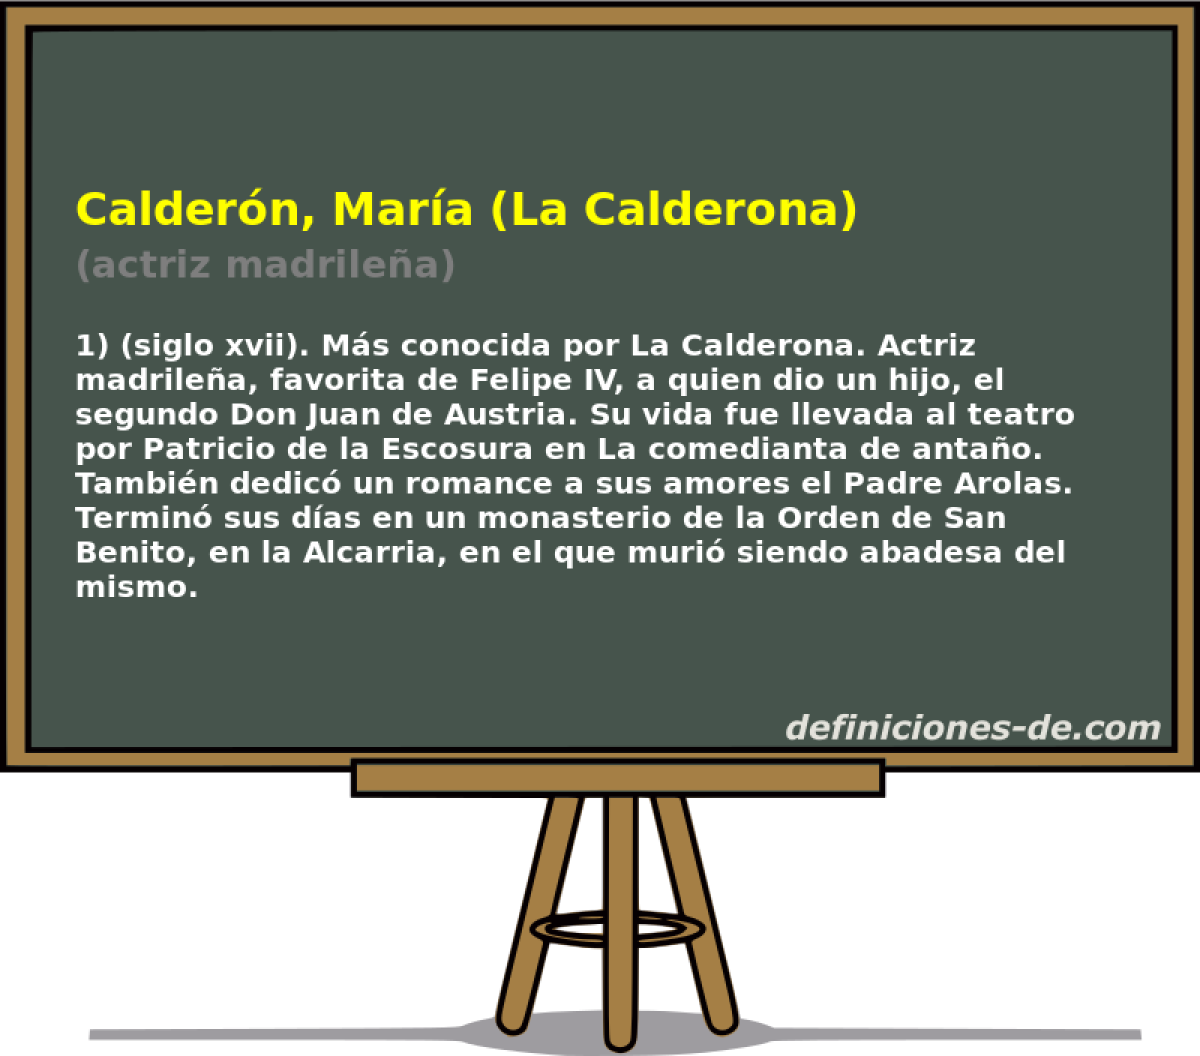 Caldern, Mara (La Calderona) (actriz madrilea)